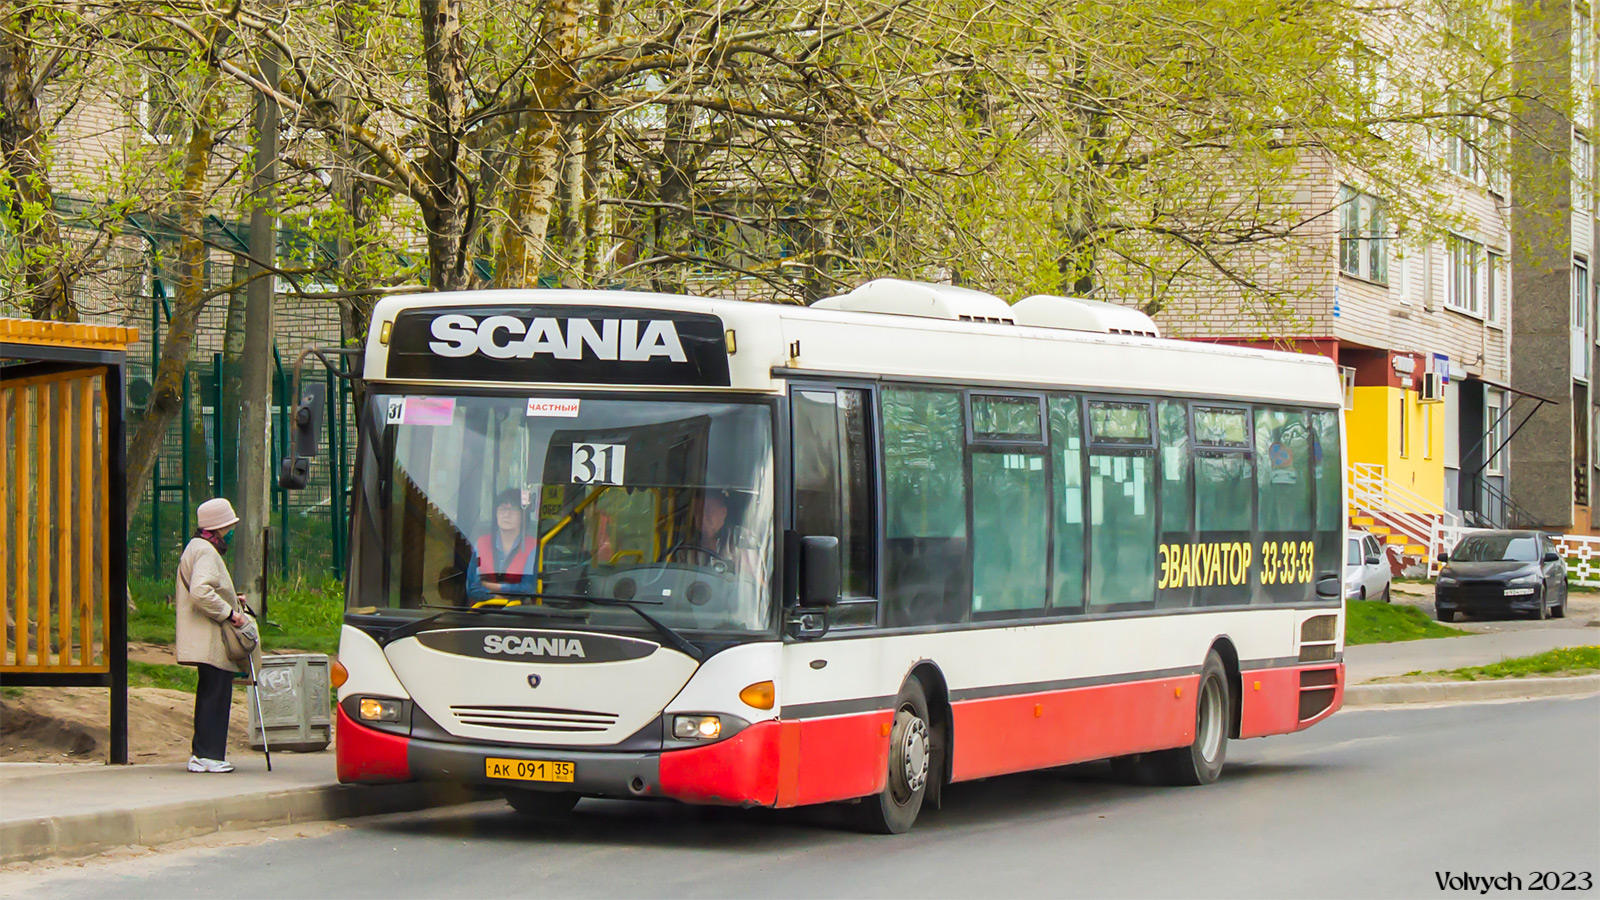 Вологодская область, Scania OmniLink I (Скания-Питер) № АК 091 35